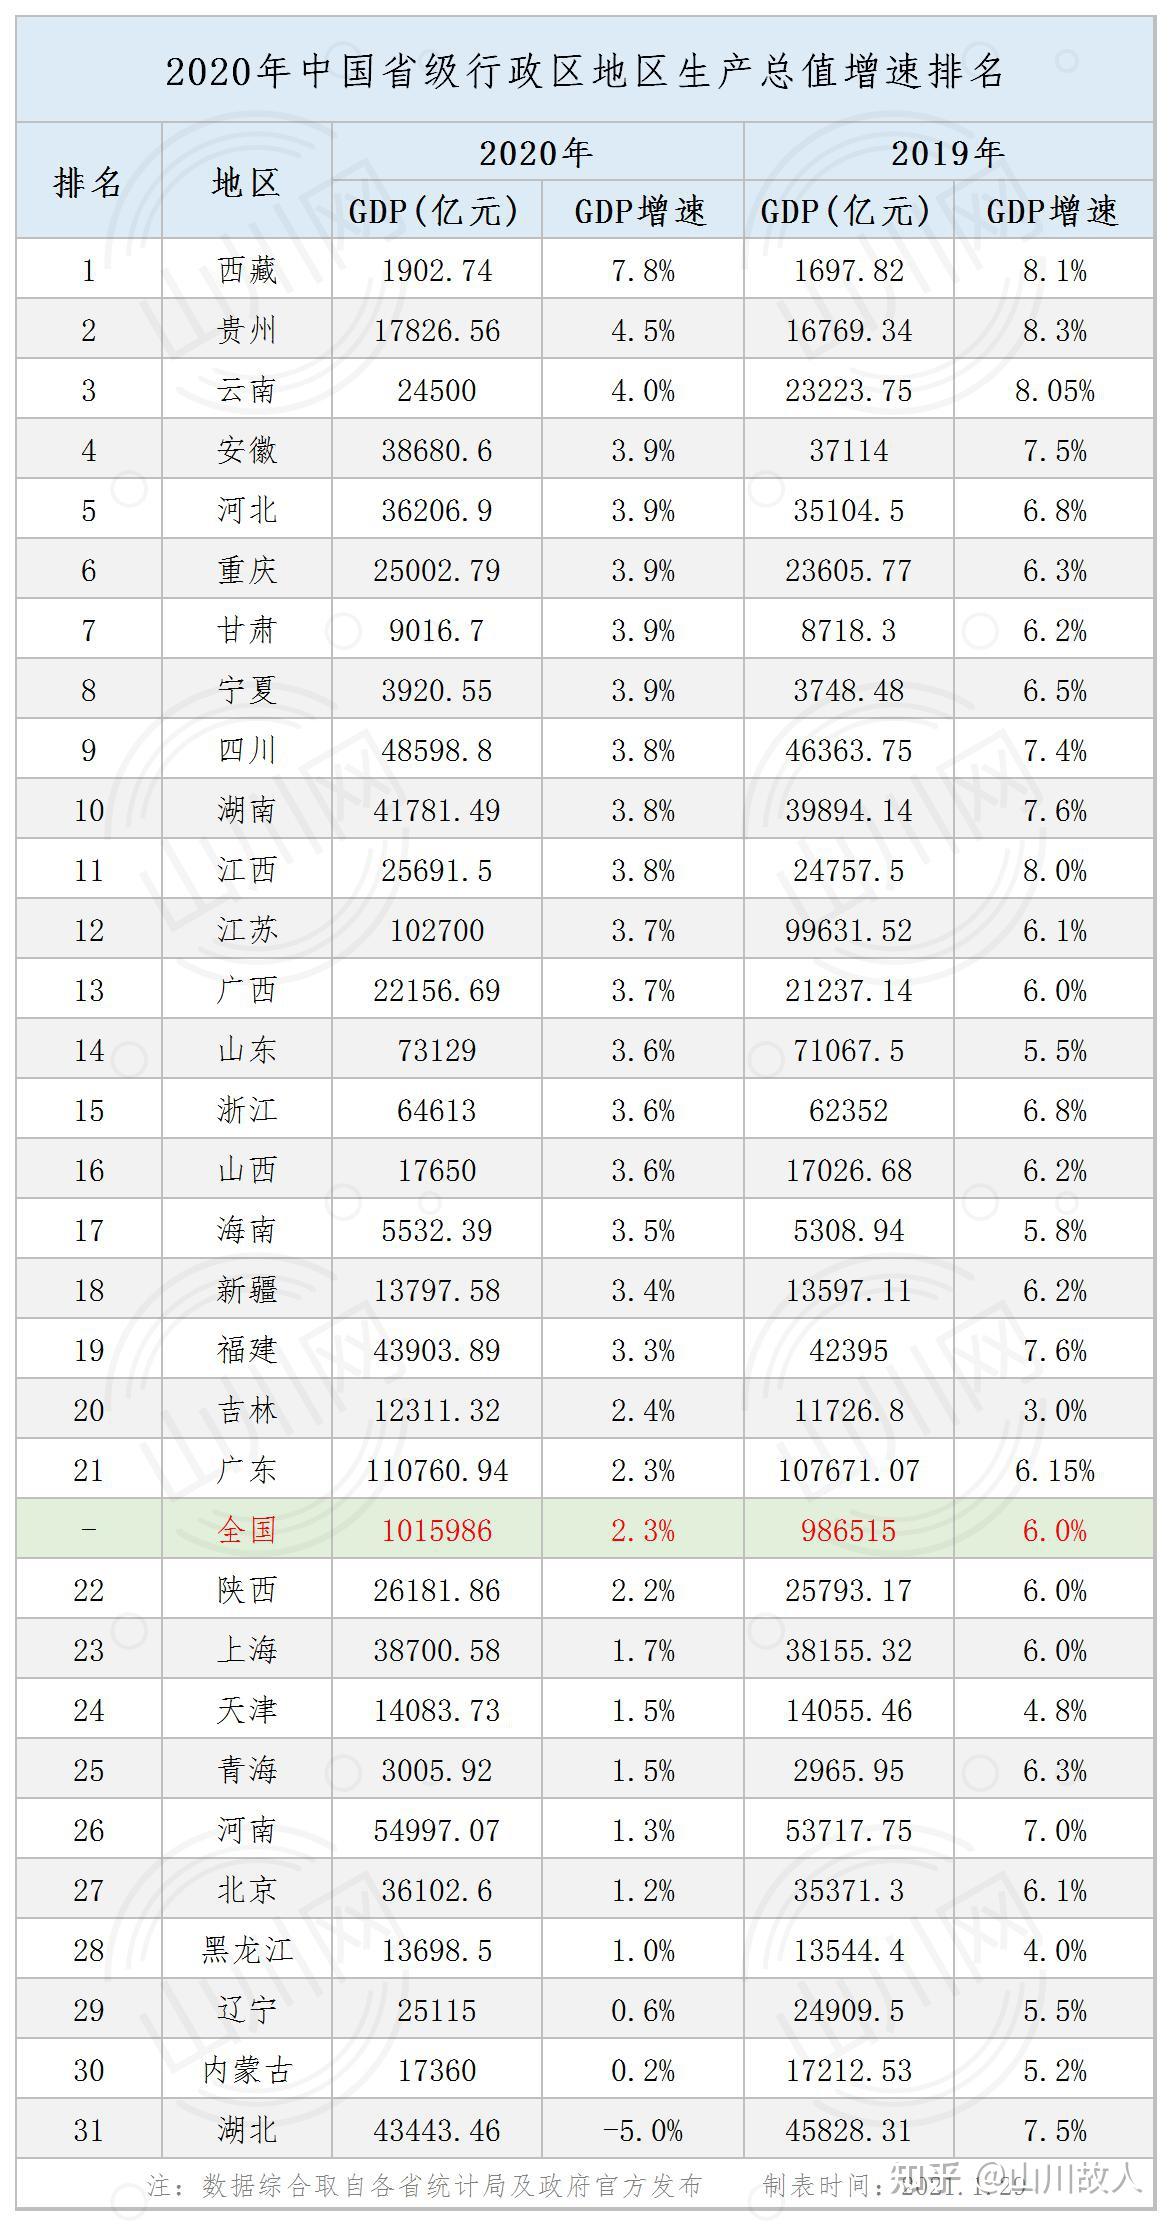 2020年中国省区gdp&增速排名:内地31省区数据已全部公布